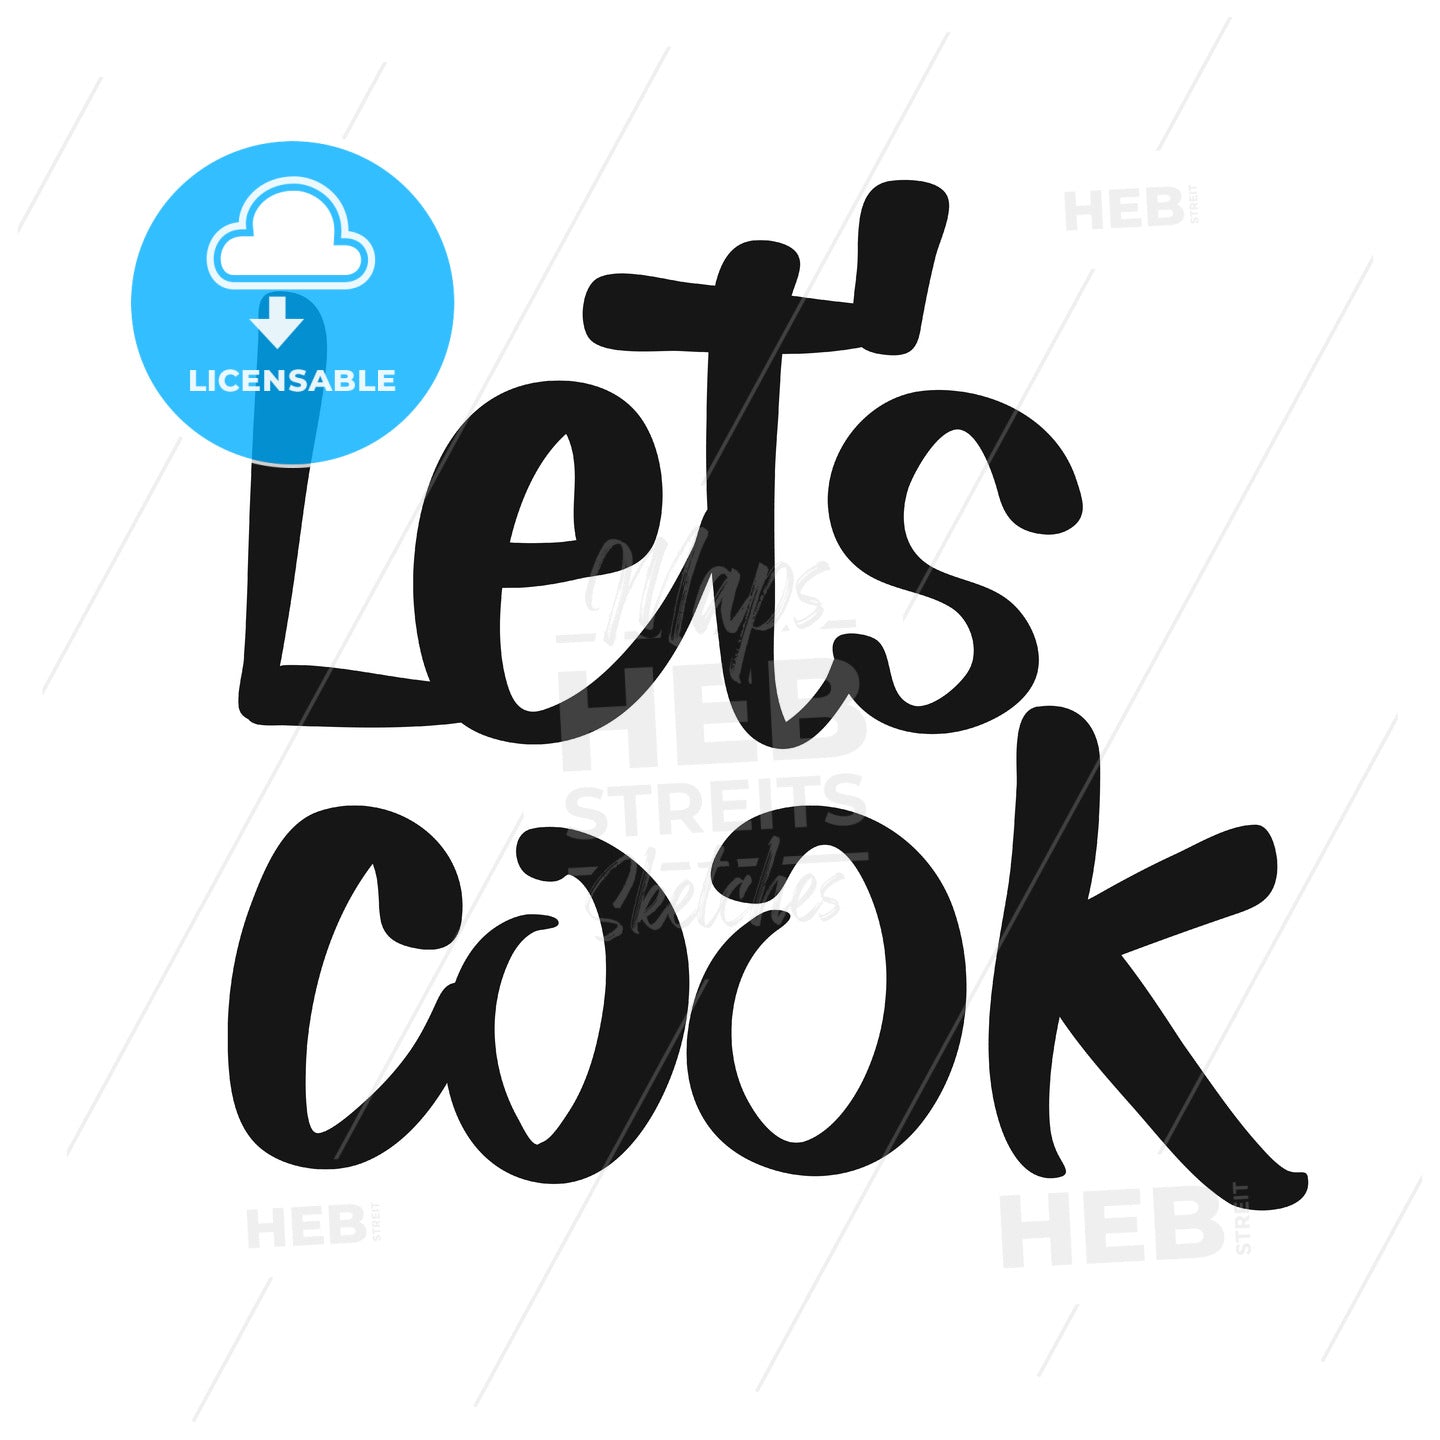 Let’s Cook handwritten lettering – instant download